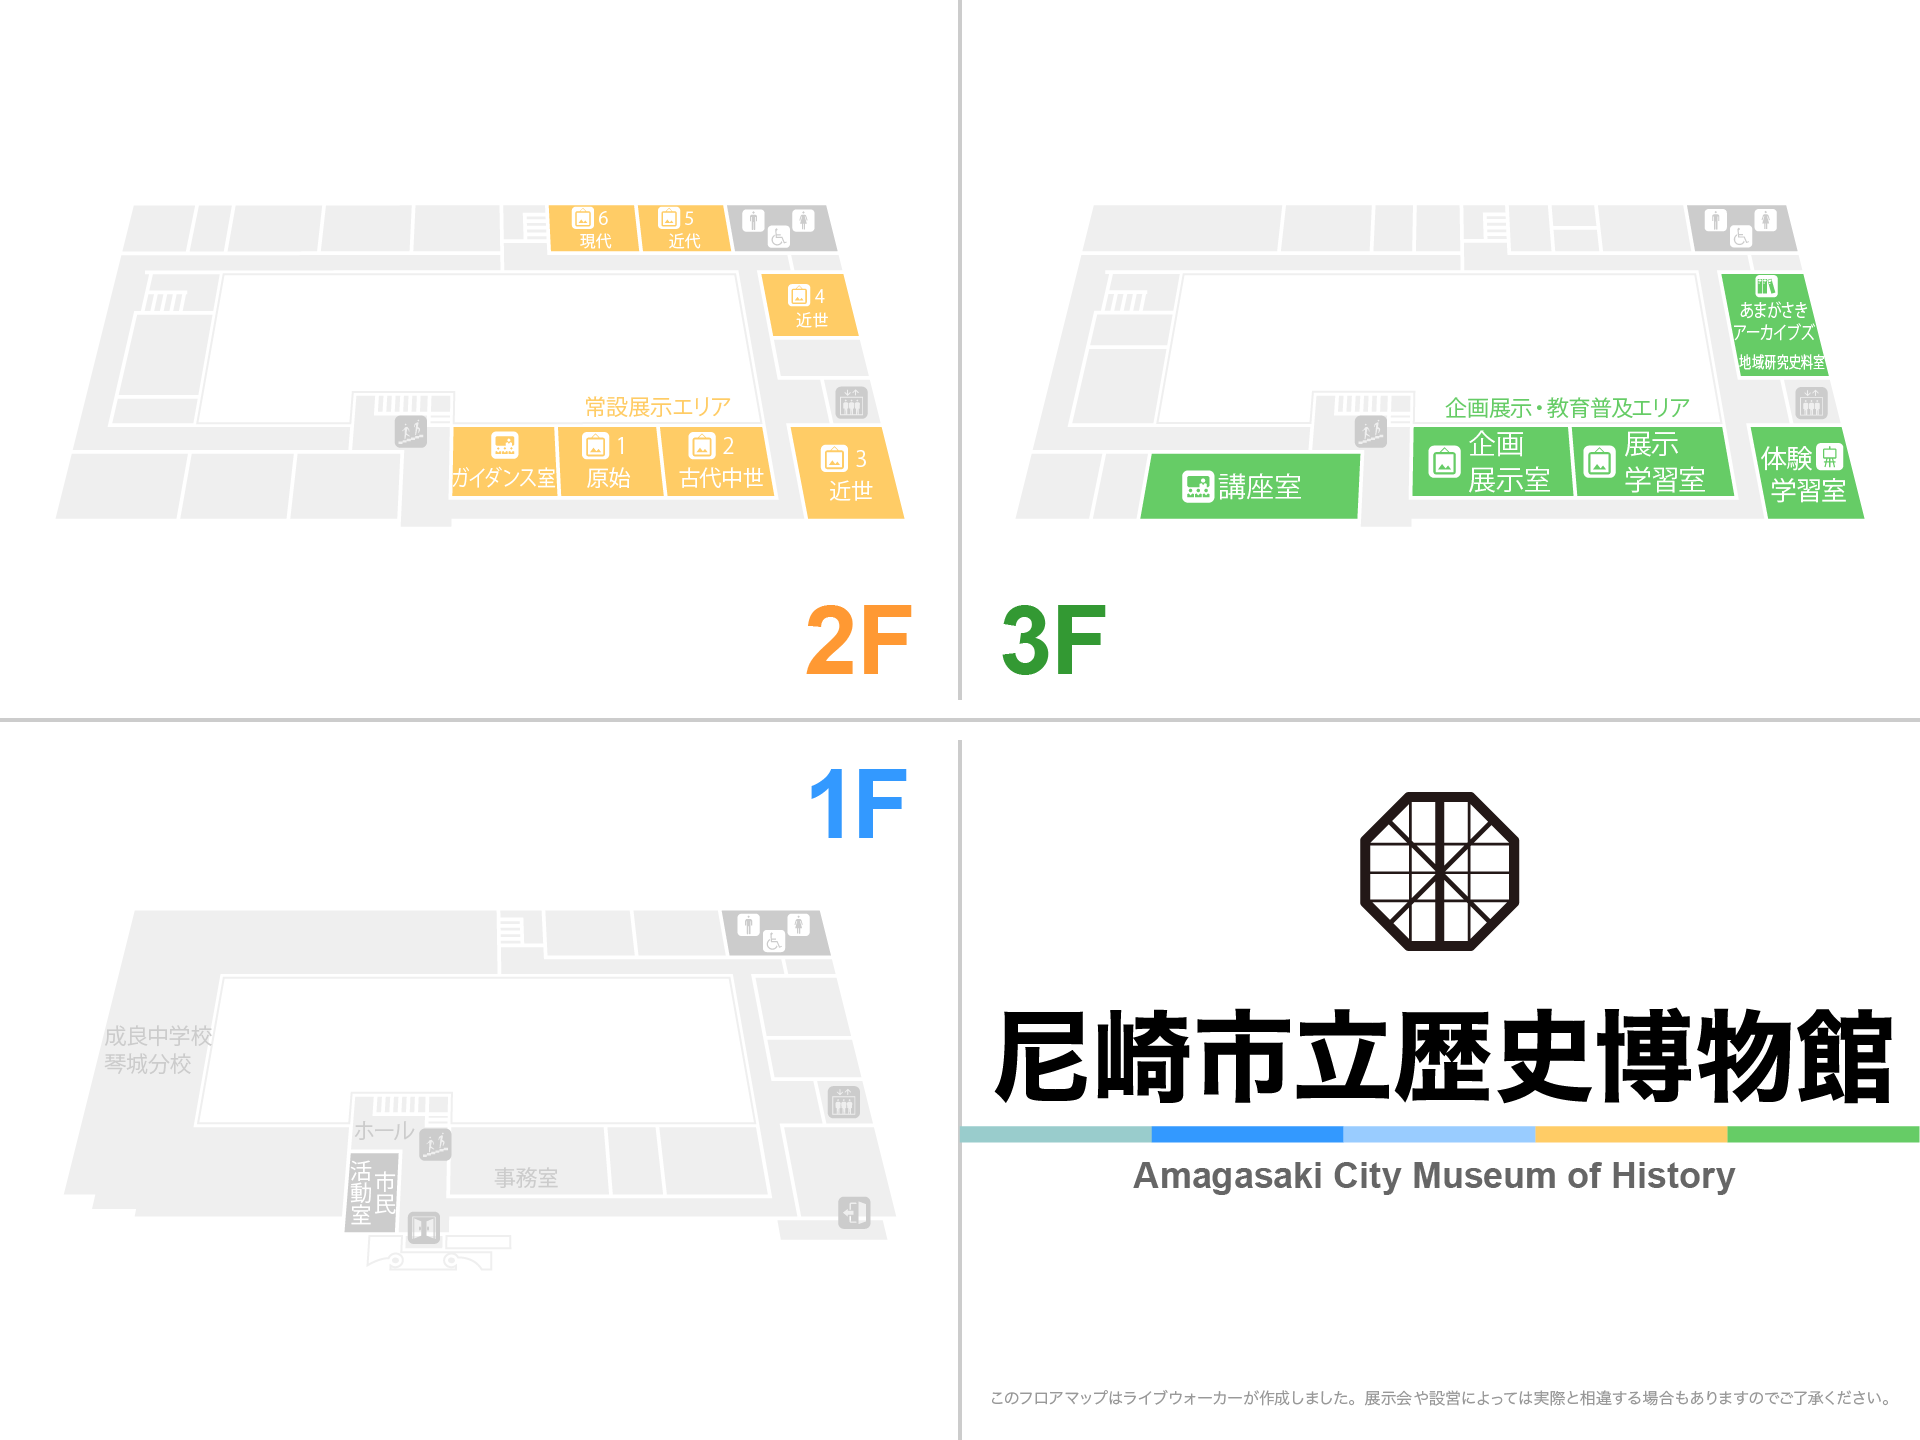 尼崎市立歴史博物館のフロアマップ